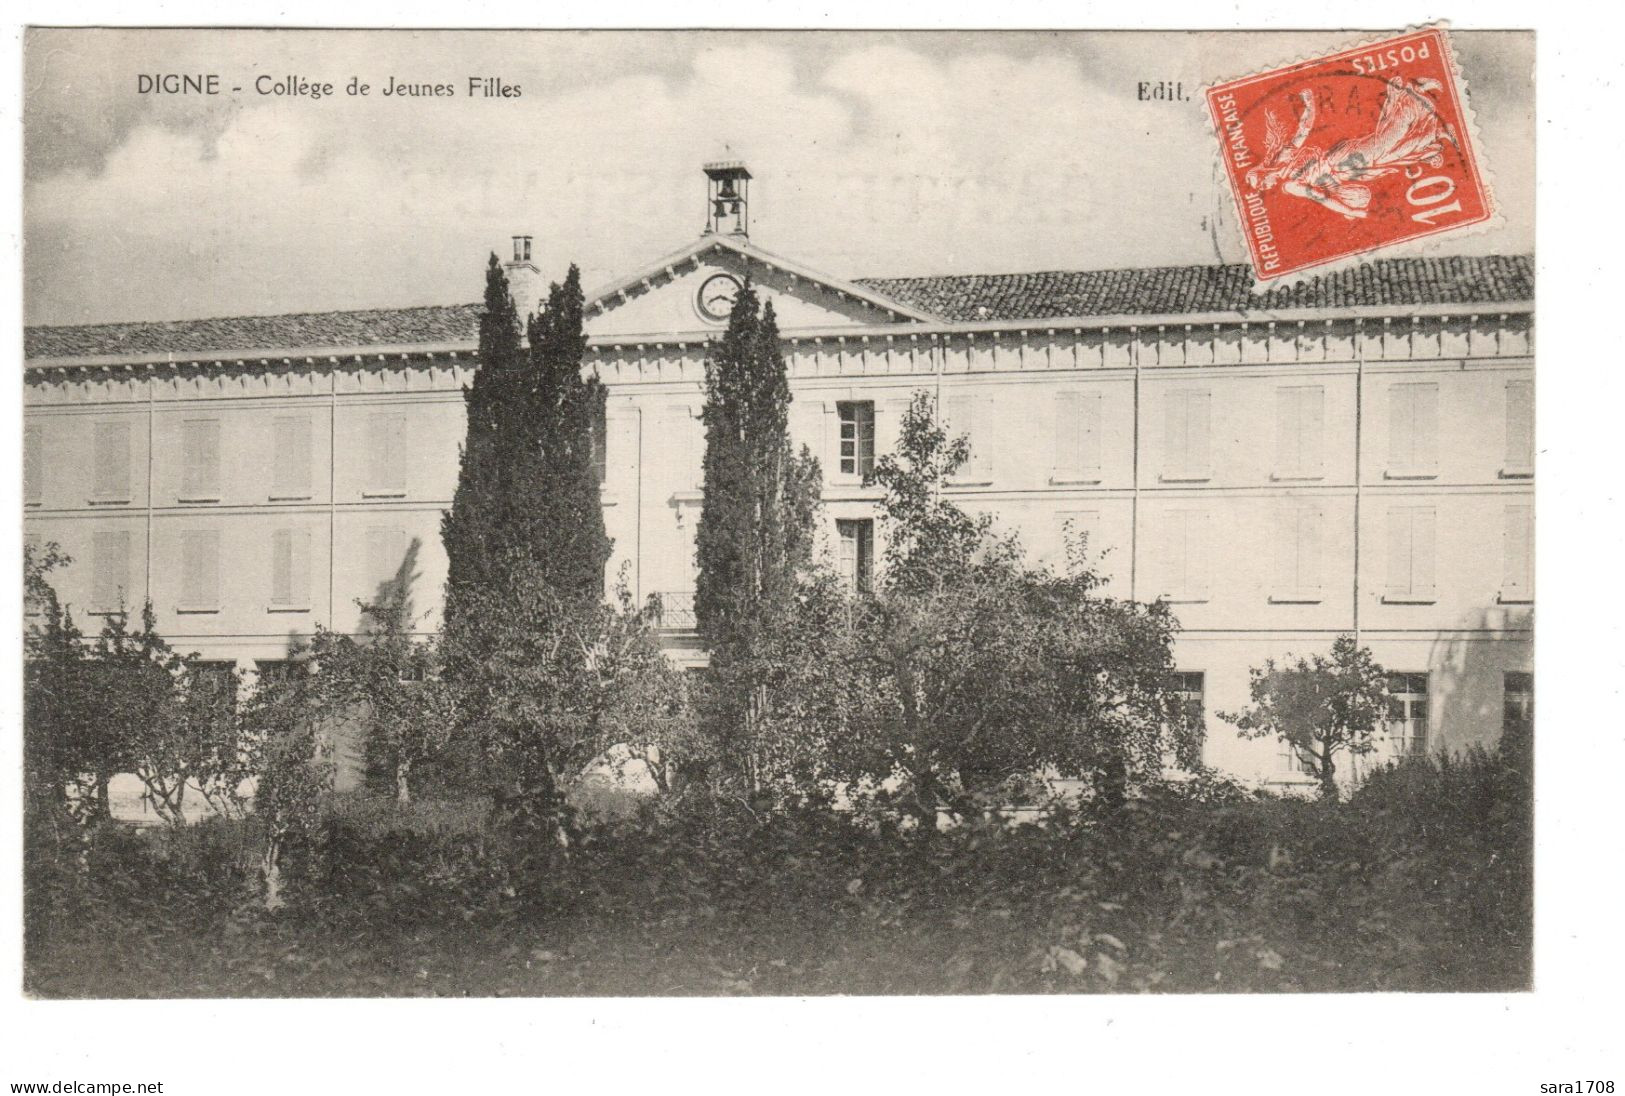 04 DIGNE, Collège De Jeunes Filles. 2 SCAN. - Digne